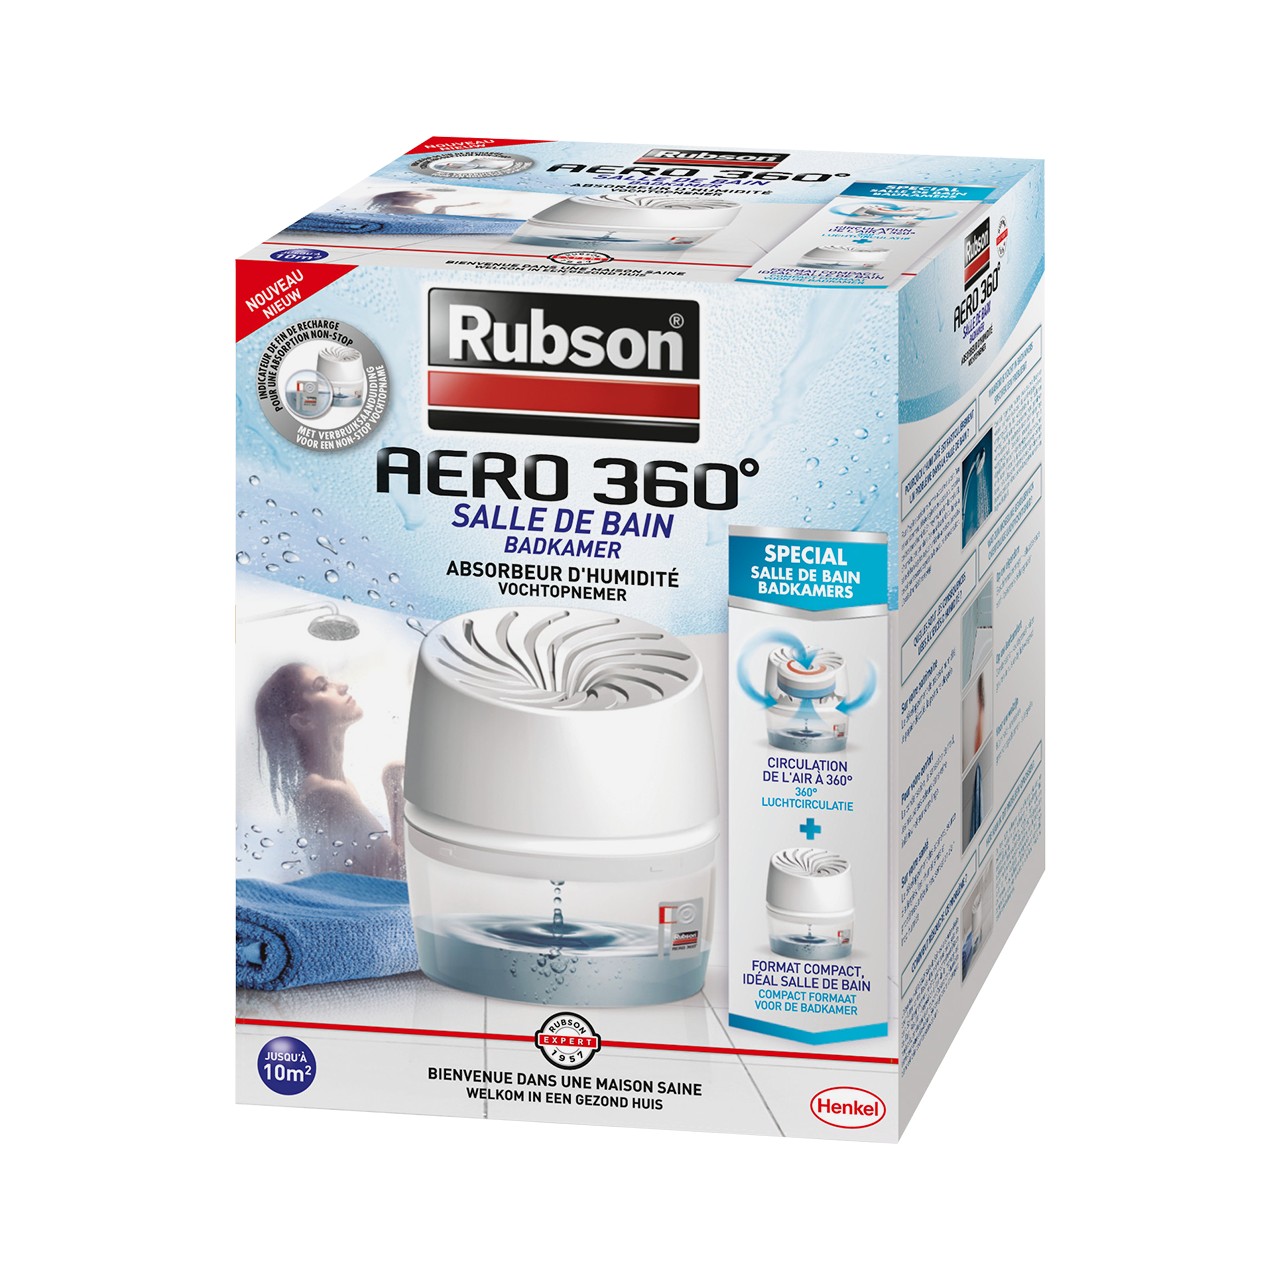 Rubson AERO 360° Absorbeur d'humidité pour pièces de 20 m²,  déshumidificateur d'air anti odeurs & anti moisissure, inclus 1 recharge  neutre de 450 g